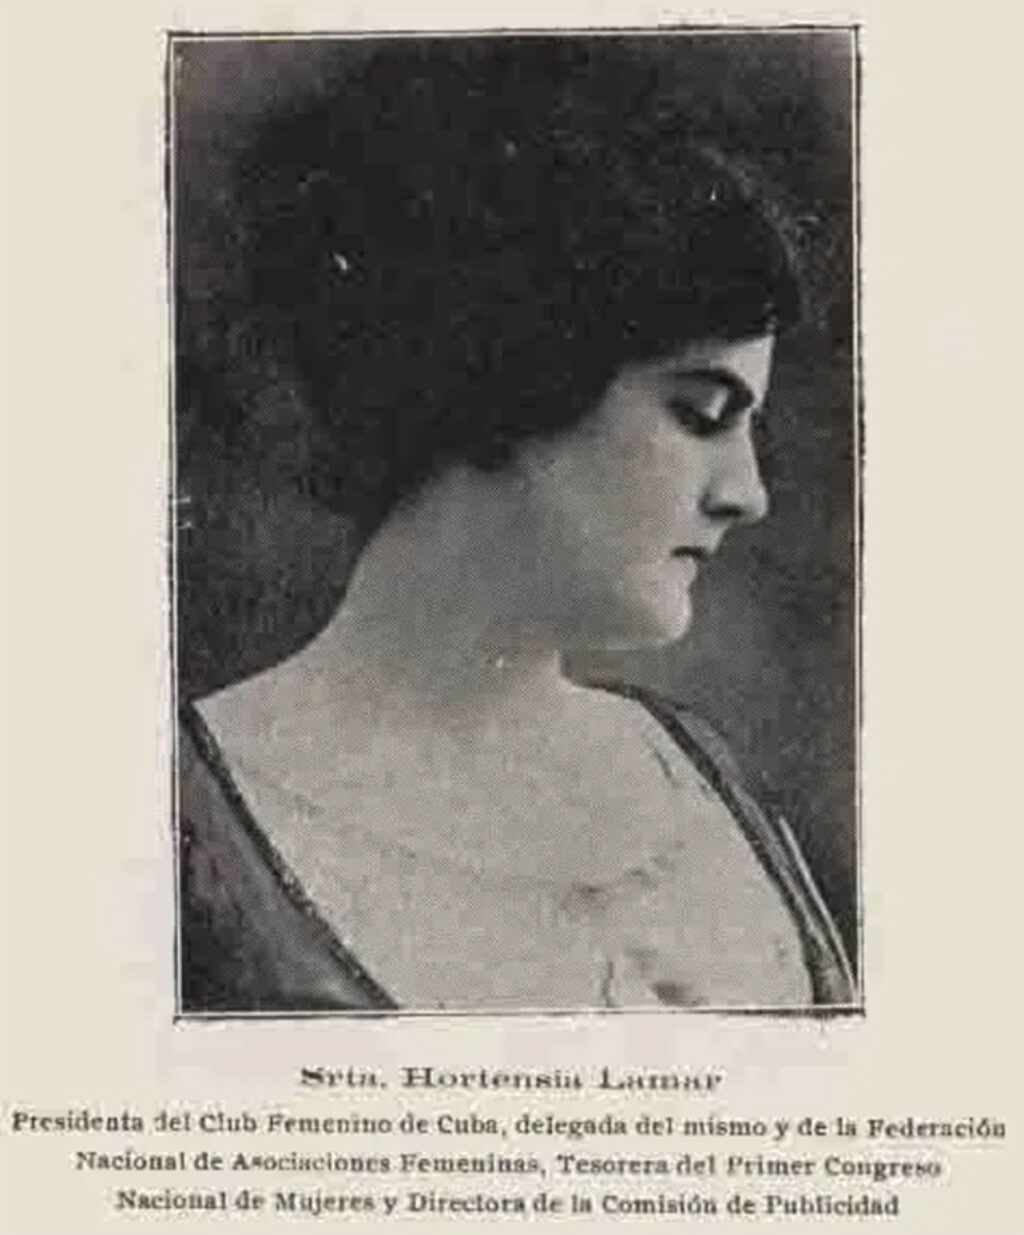 Hortensia Lamar, presidenta de la Federación Nacional de Asociaciones Femeninas.